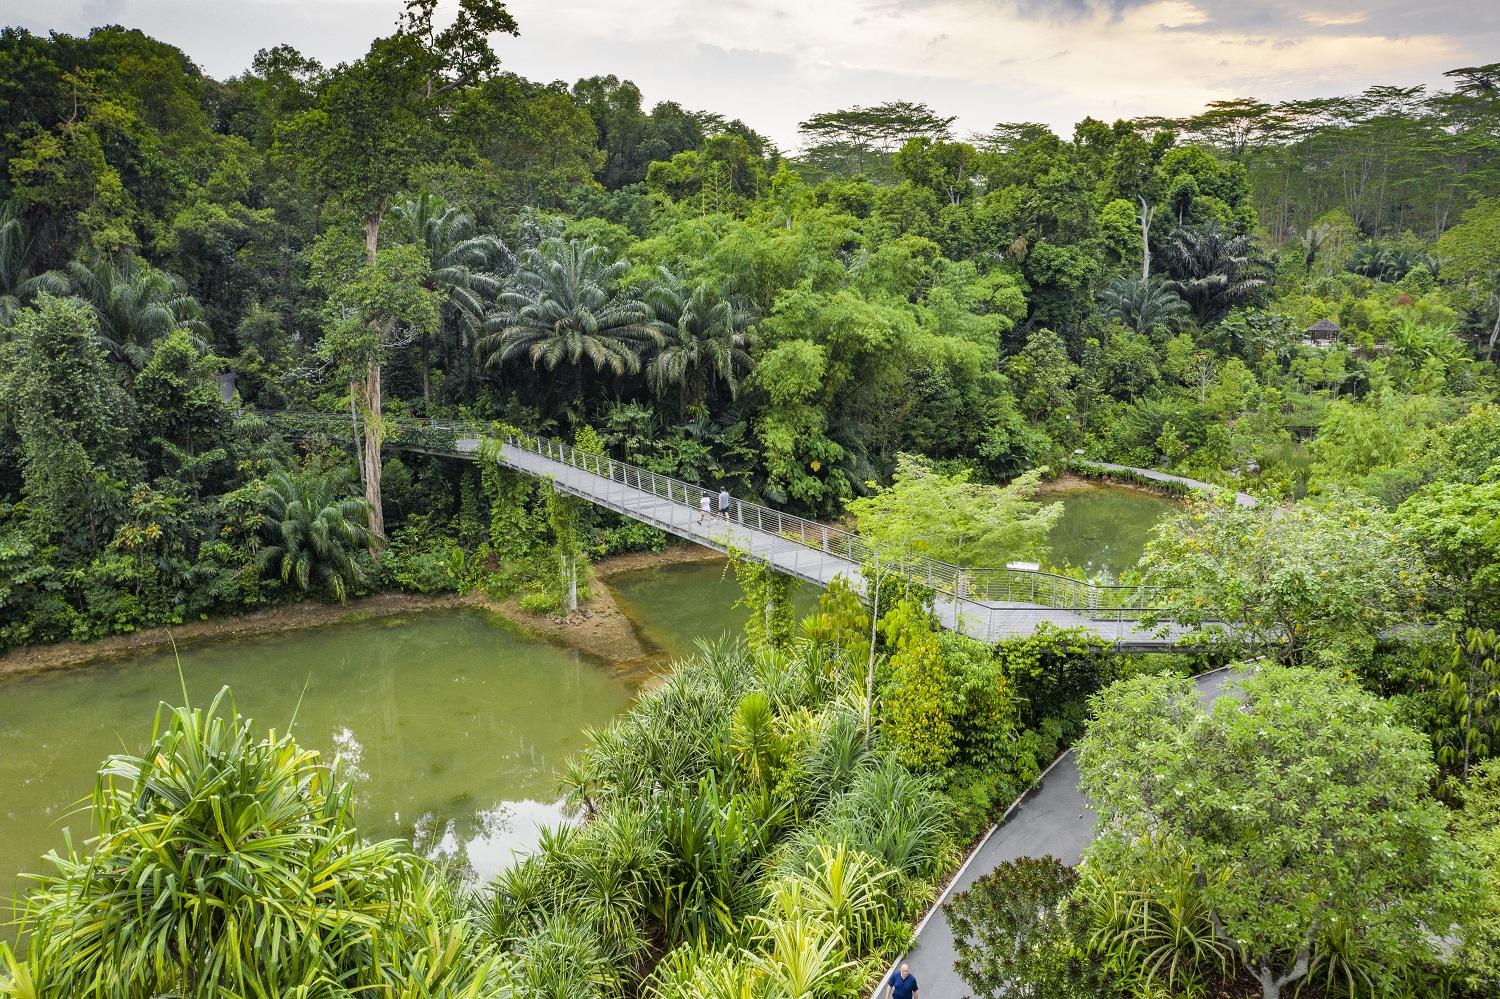 singapour de jardins suspendus en quartiers atypiques nos incontournables dans la cite etat